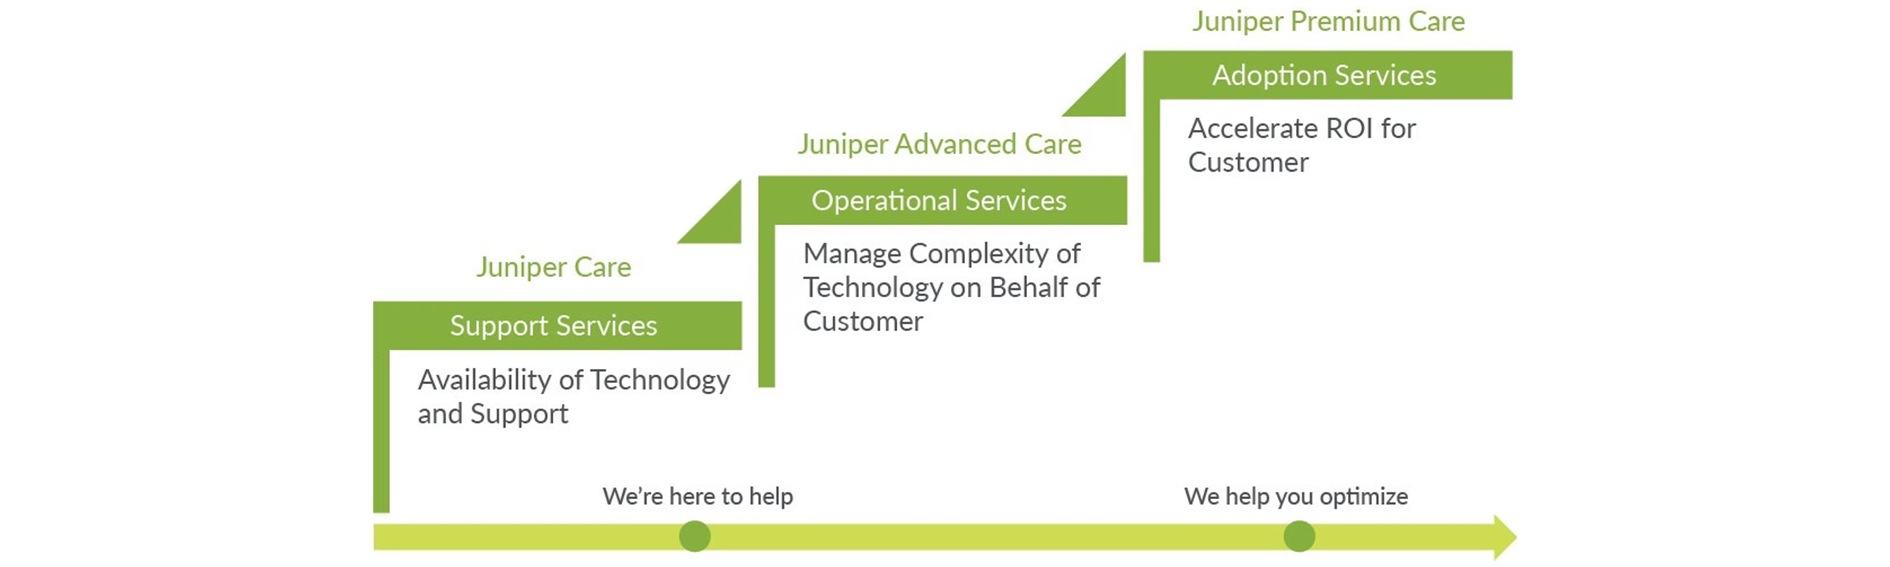 Juniper Care Service Übersicht für Juniper Care, Juniper Advanced Care und Juniper Premium Care